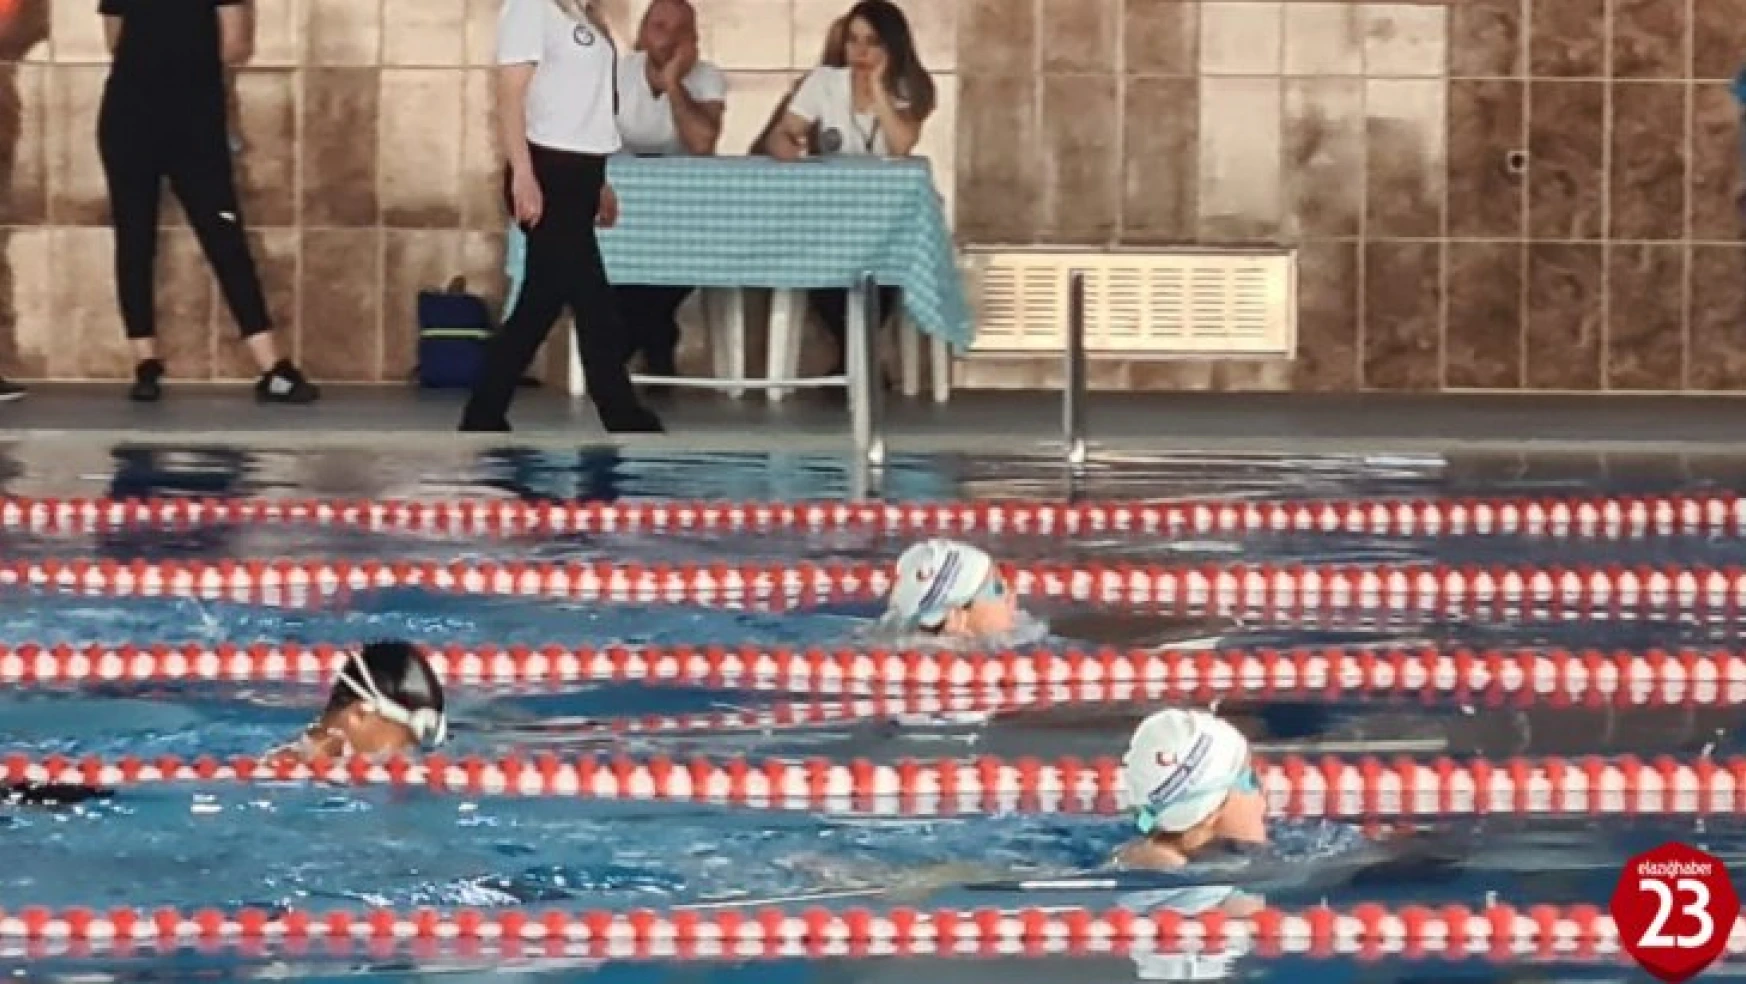 Elazığ'da yüzme şampiyonası